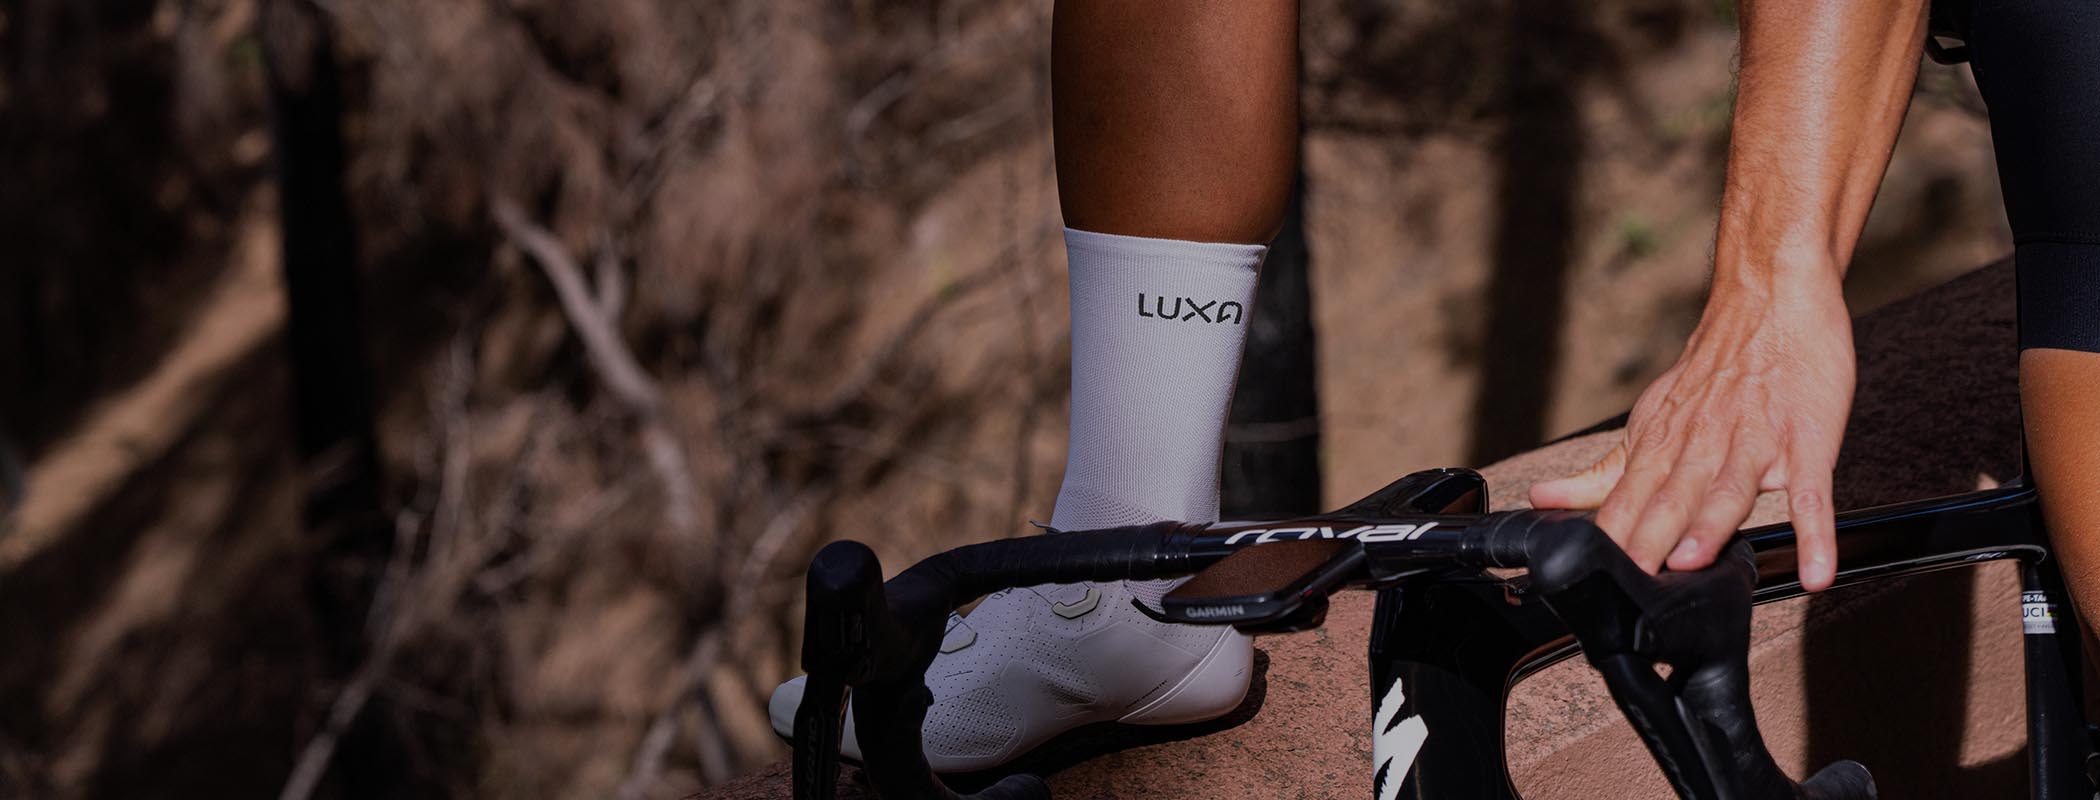 Radfahrer, die Luxa-Radsportbekleidung tragen, tragen auch passende Radsportsocken in den gleichen Farben wie ihre Uniformen